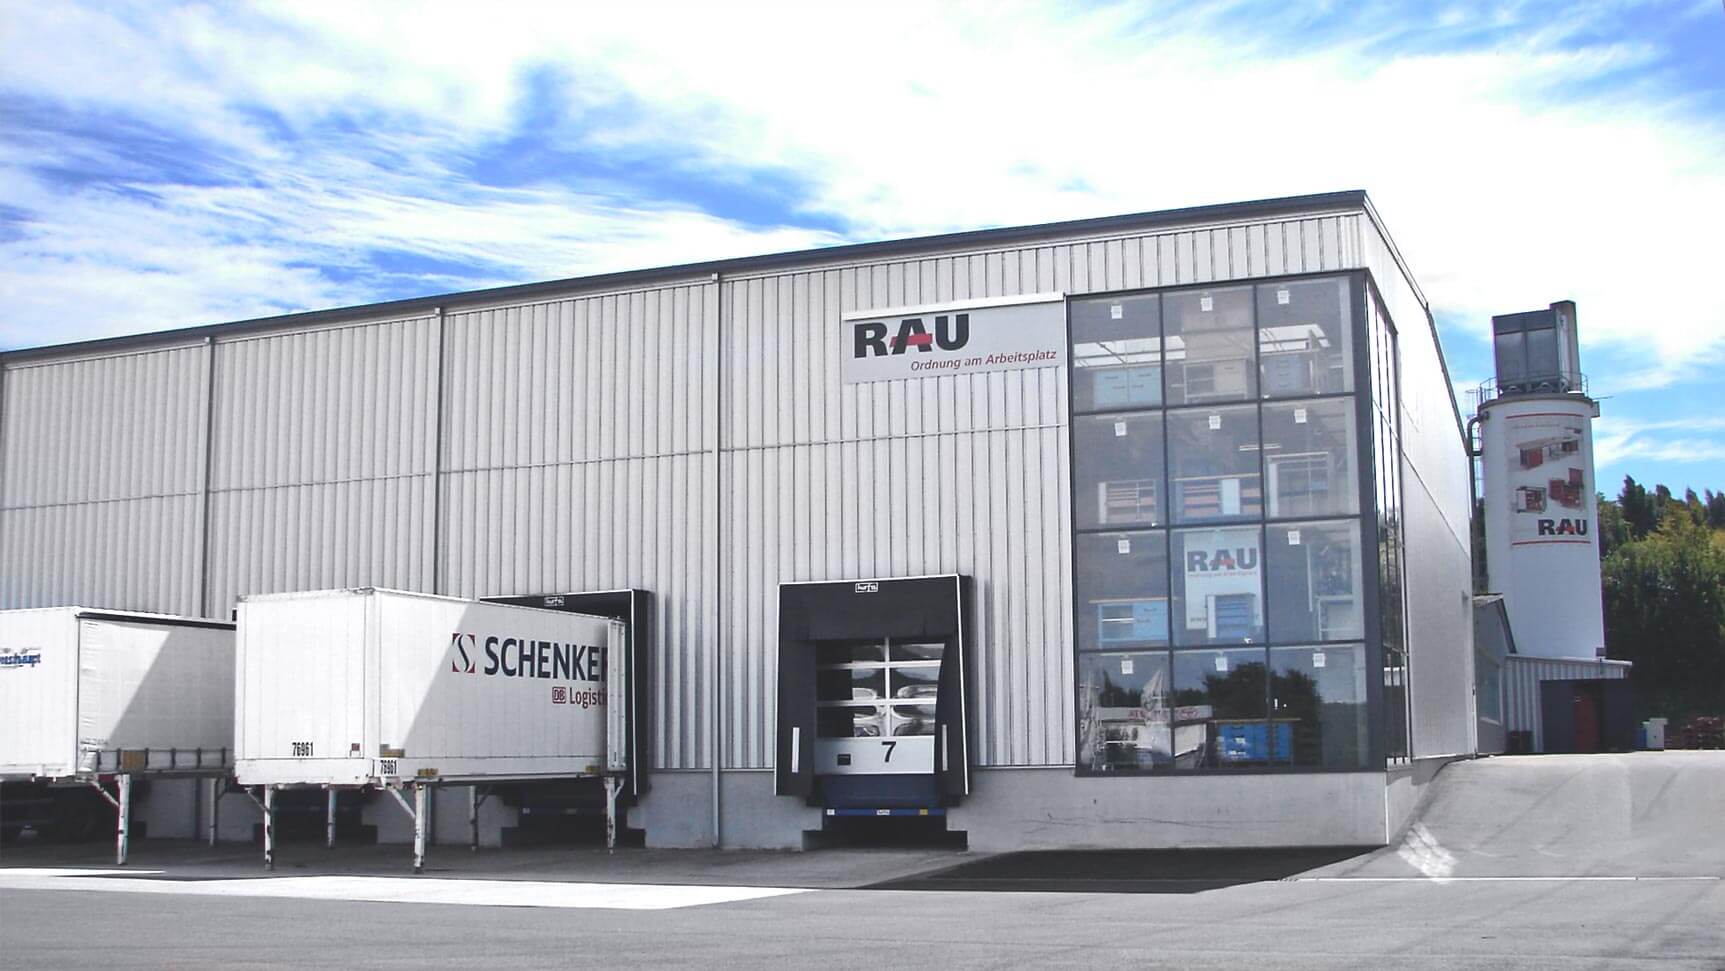 Rau GmbH in Balingen